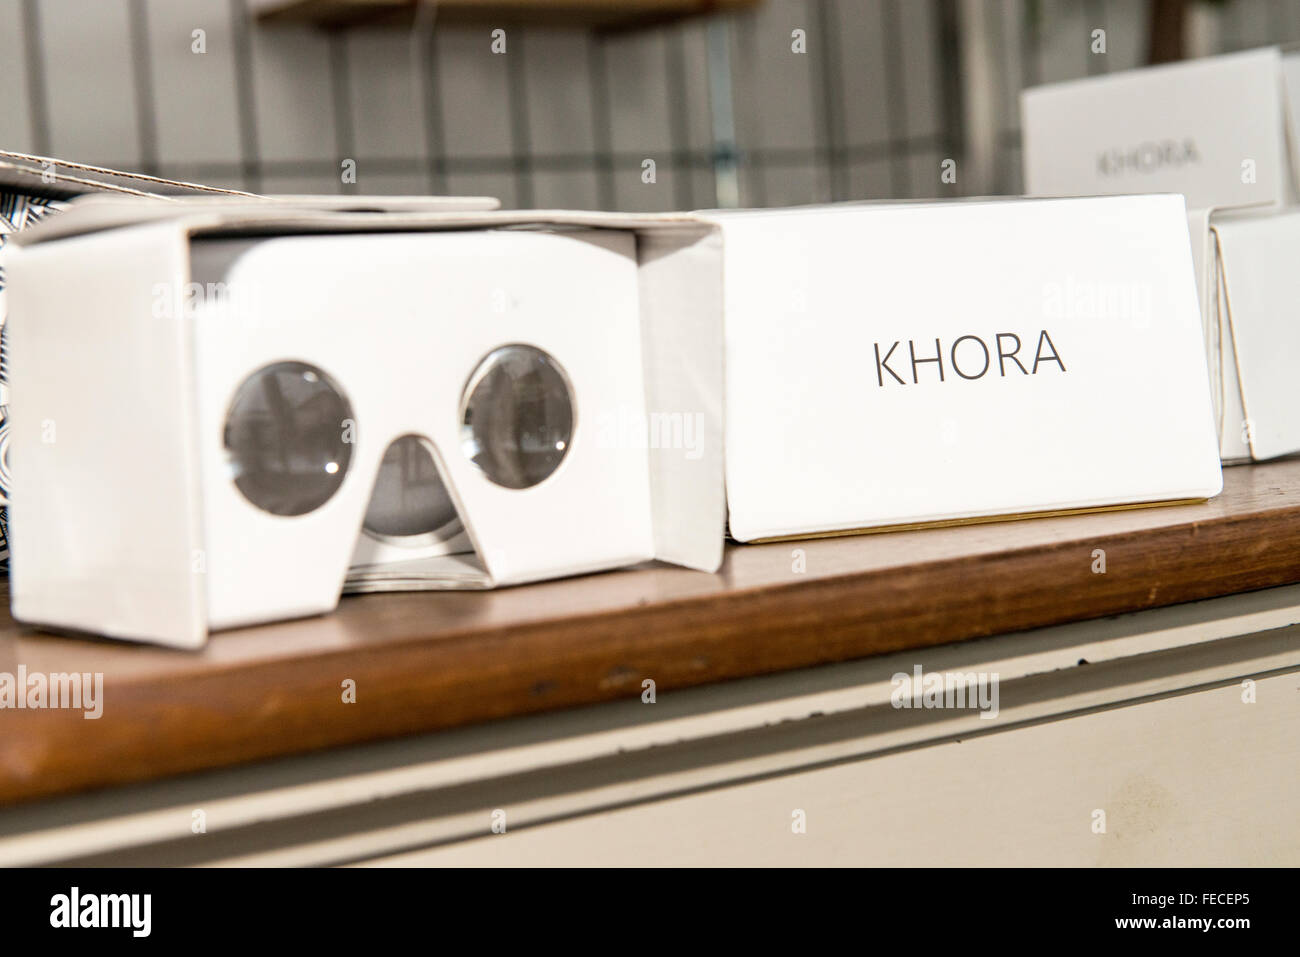 Copenhague, Danemark. 5 Février, 2016. Khora est un pop-up de l'espace dans le Meatpacking district de Copenhague, où les gens peuvent marcher et essayer différents niveaux de réalité virtuelle. Les écoles seront en mesure de venir dans le cadre d'excursions, les entreprises peuvent venir pour voir ce qui est possible avec VR. Les amateurs de VR sera en mesure d'entrer et de collaborer avec des créateurs de contenu. Leur objectif est de créer un environnement où les idées sur la réalité virtuelle peuvent se développer et de venir à la vie. Sur la photo est un casque VR en carton de Google, qui à seulement £ 15 est une alternative abordable à un coûteux casque. © Matthew James Banque D'Images